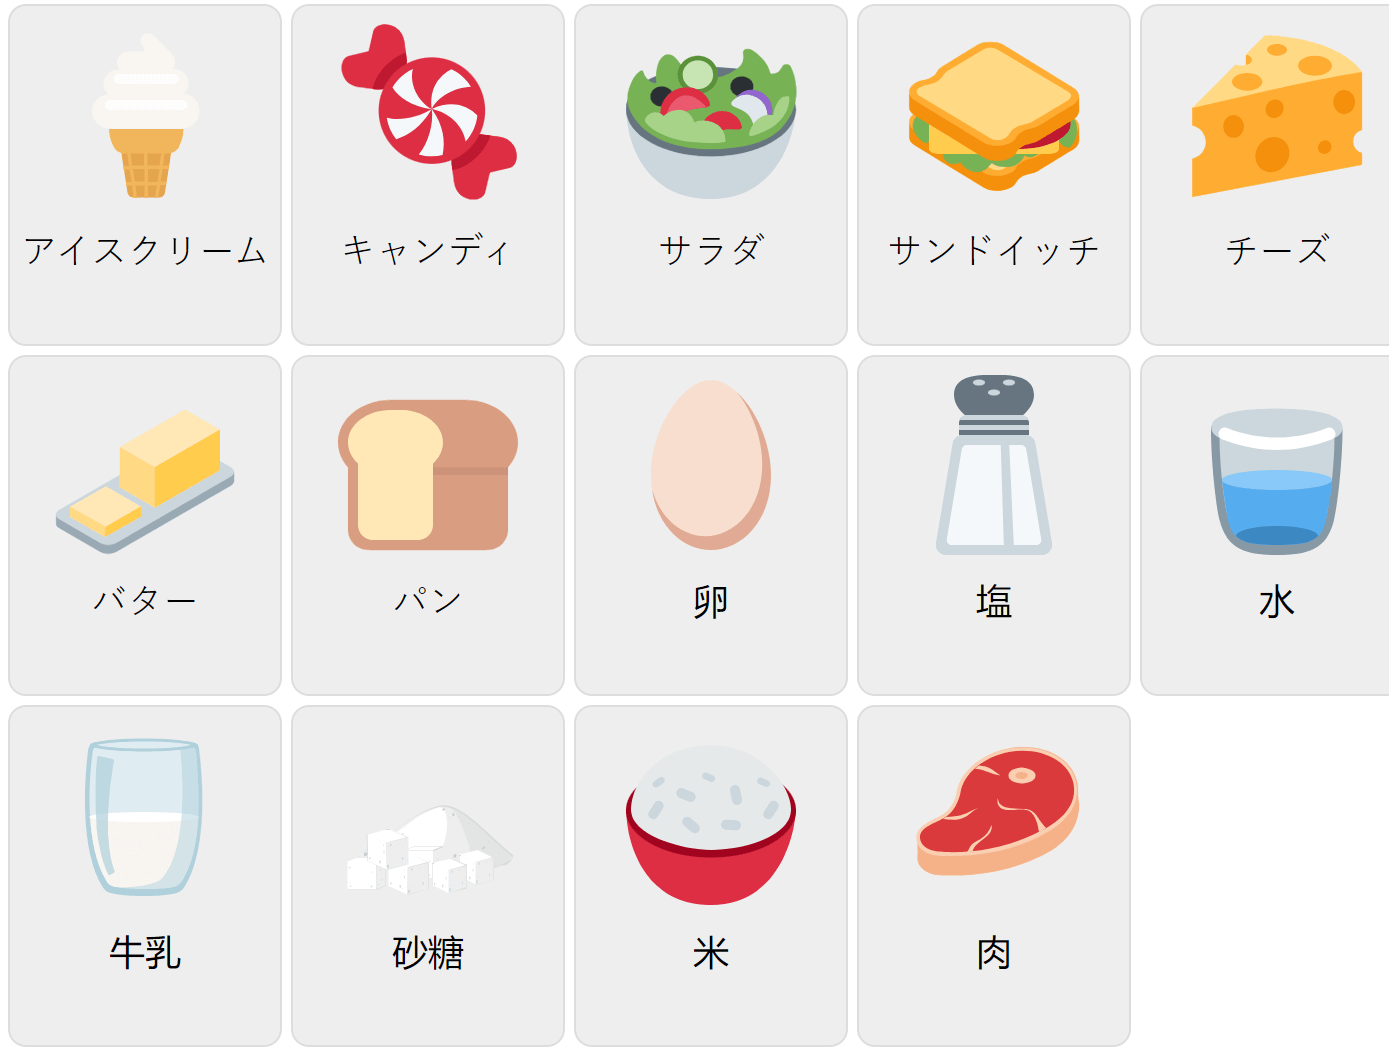 Їжа на японській мові 1